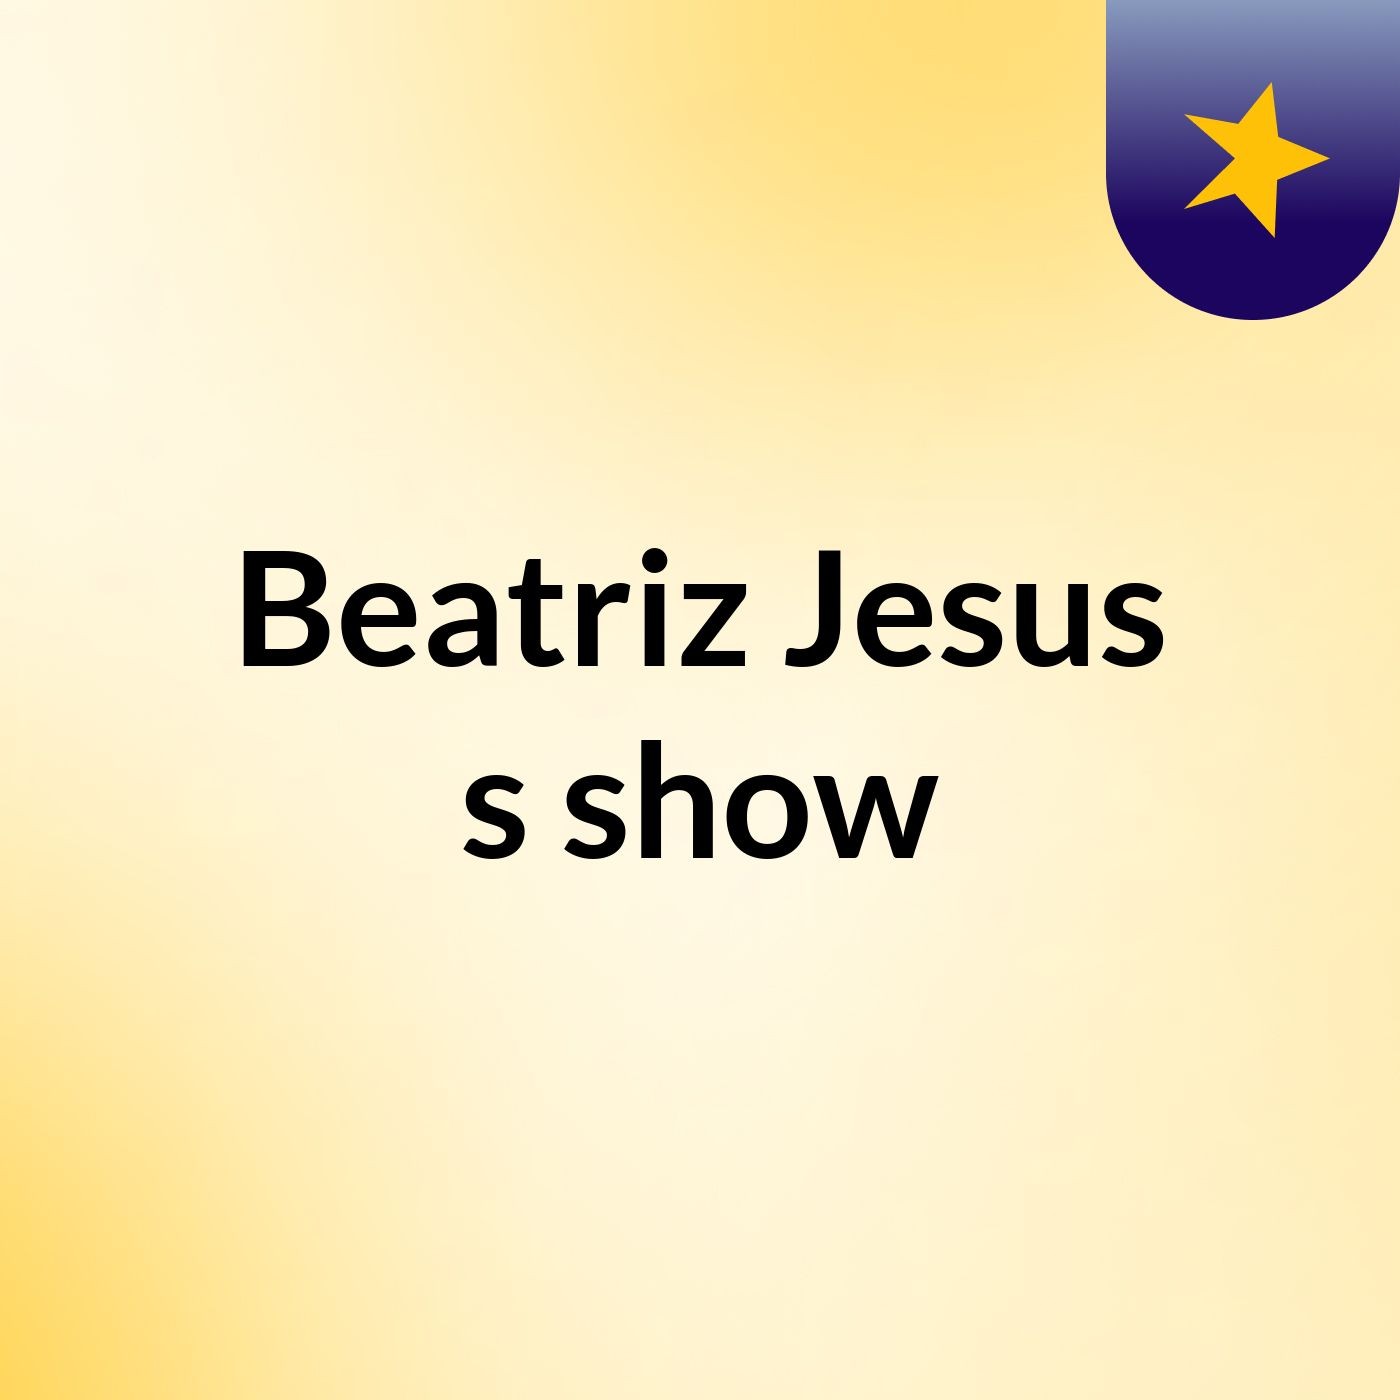 Beatriz Jesus's show